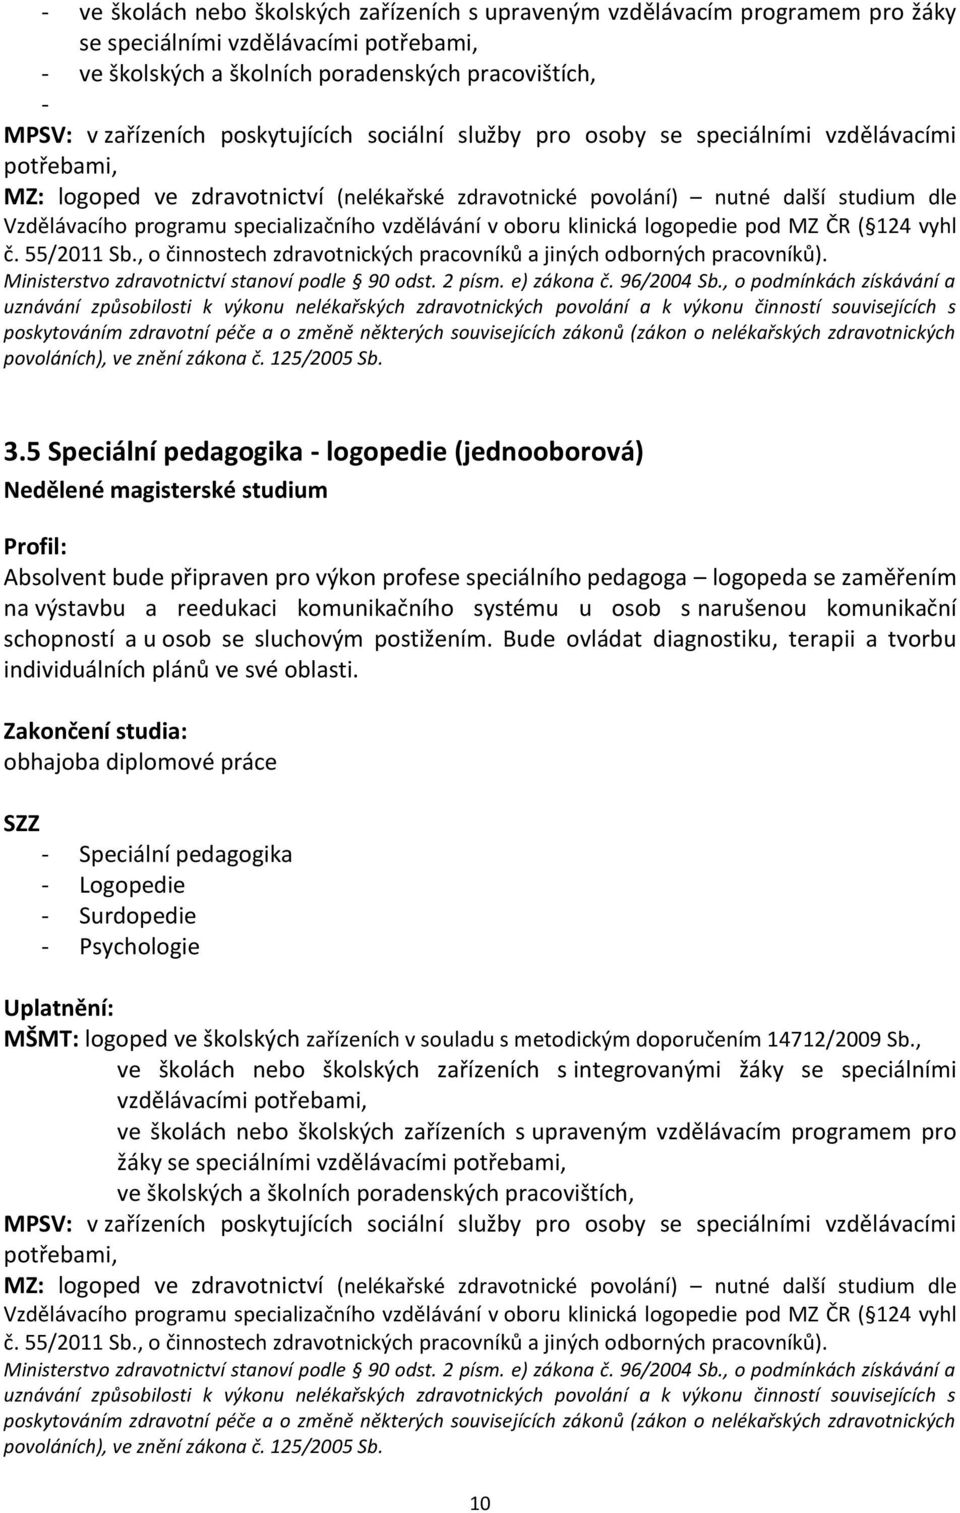 specializačního vzdělávání v oboru klinická logopedie pod MZ ČR ( 124 vyhl č. 55/2011 Sb., o činnostech zdravotnických pracovníků a jiných odborných pracovníků).